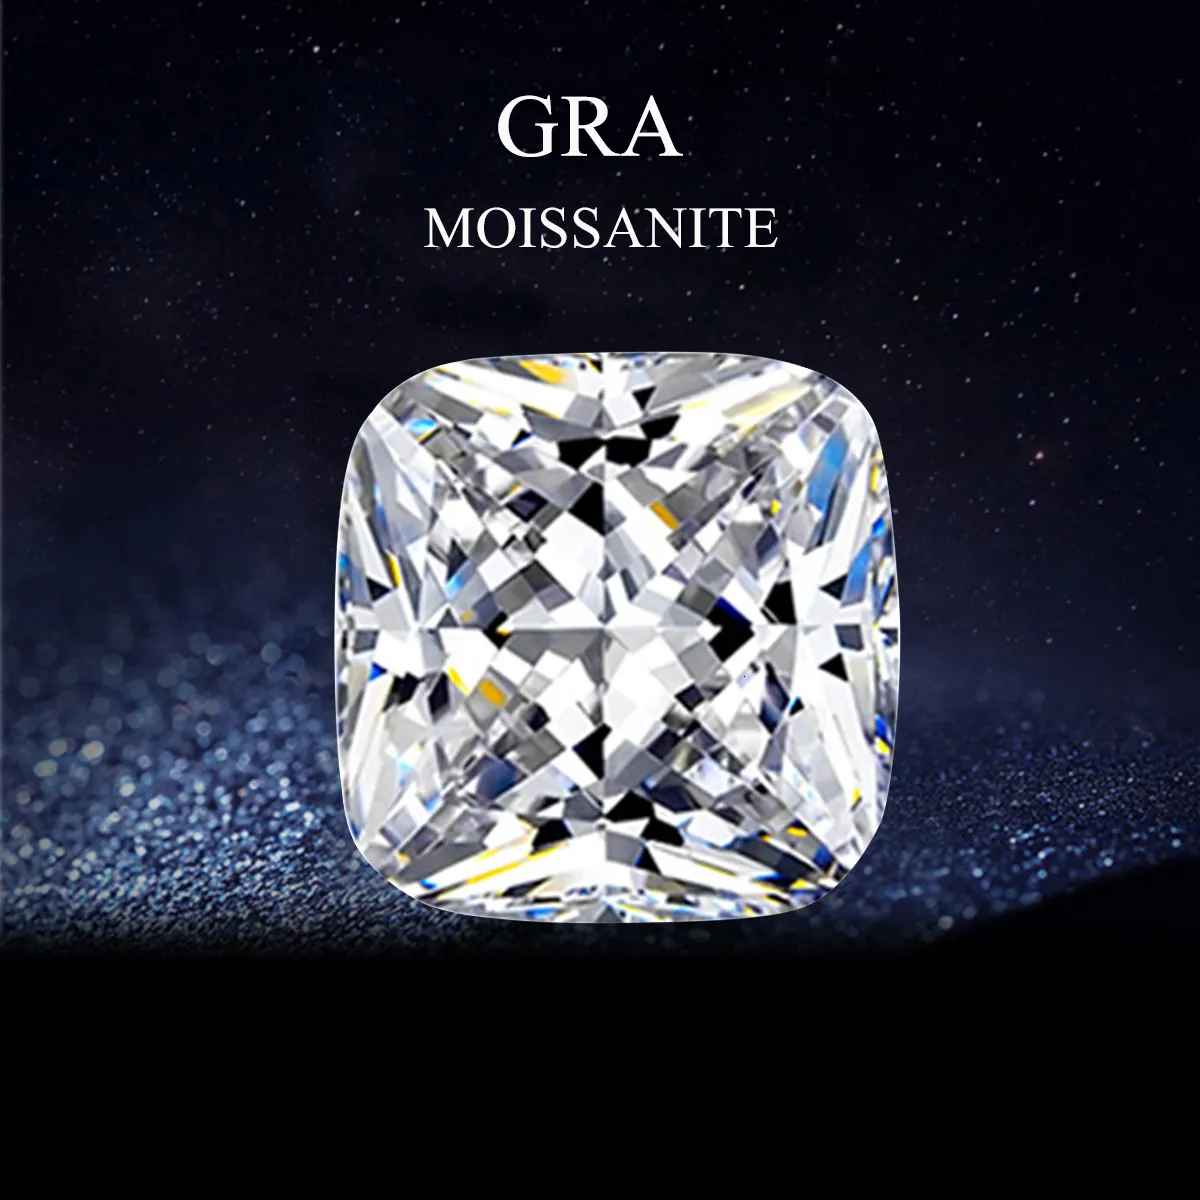 Promotion de diamants en vrac Coussin de pierres précieuses en vrac Brillant D Diamants cultivés en laboratoire Excellente pierre de certificat GRA 230607